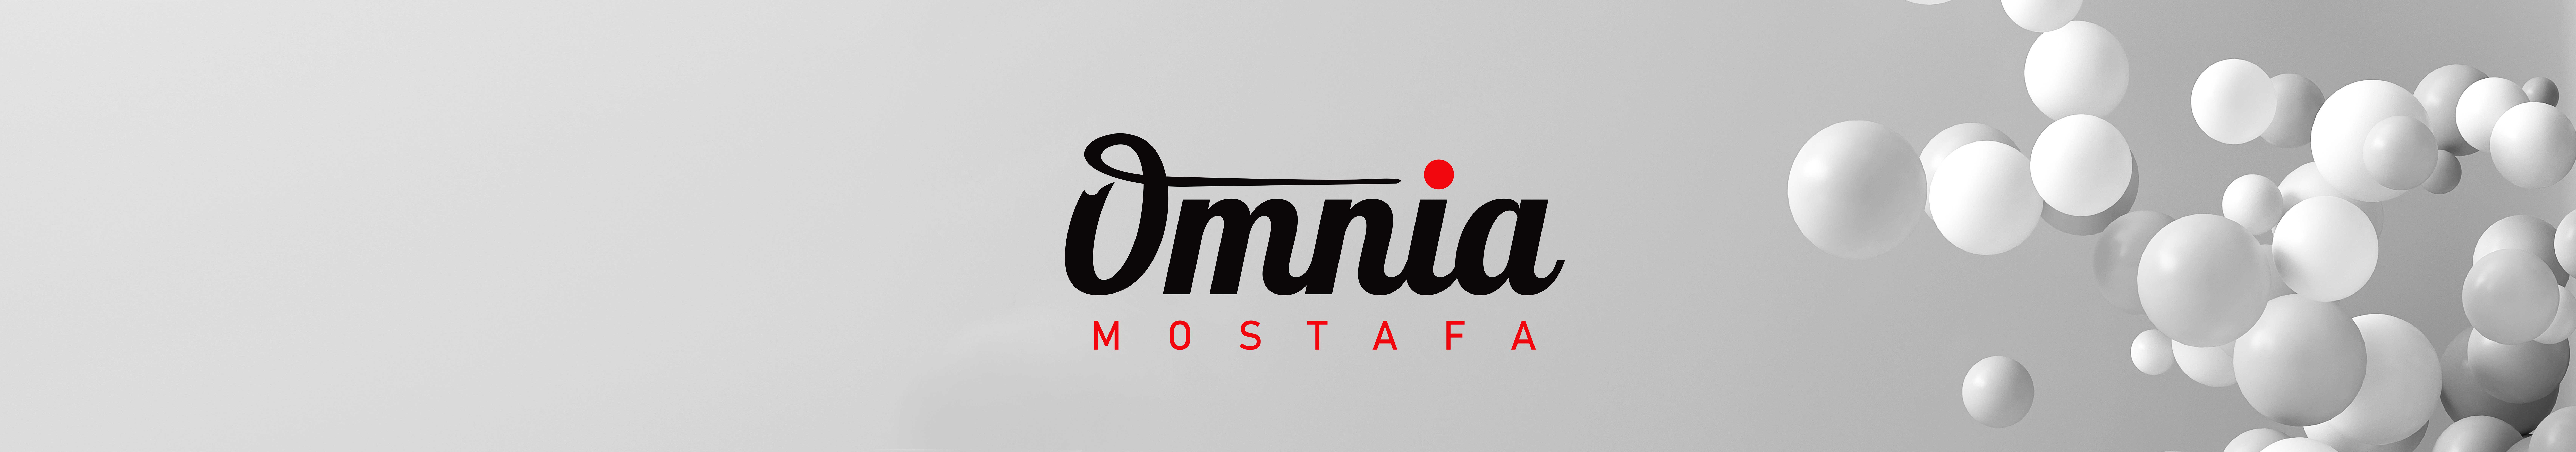 Omnia Mostafa's profile banner